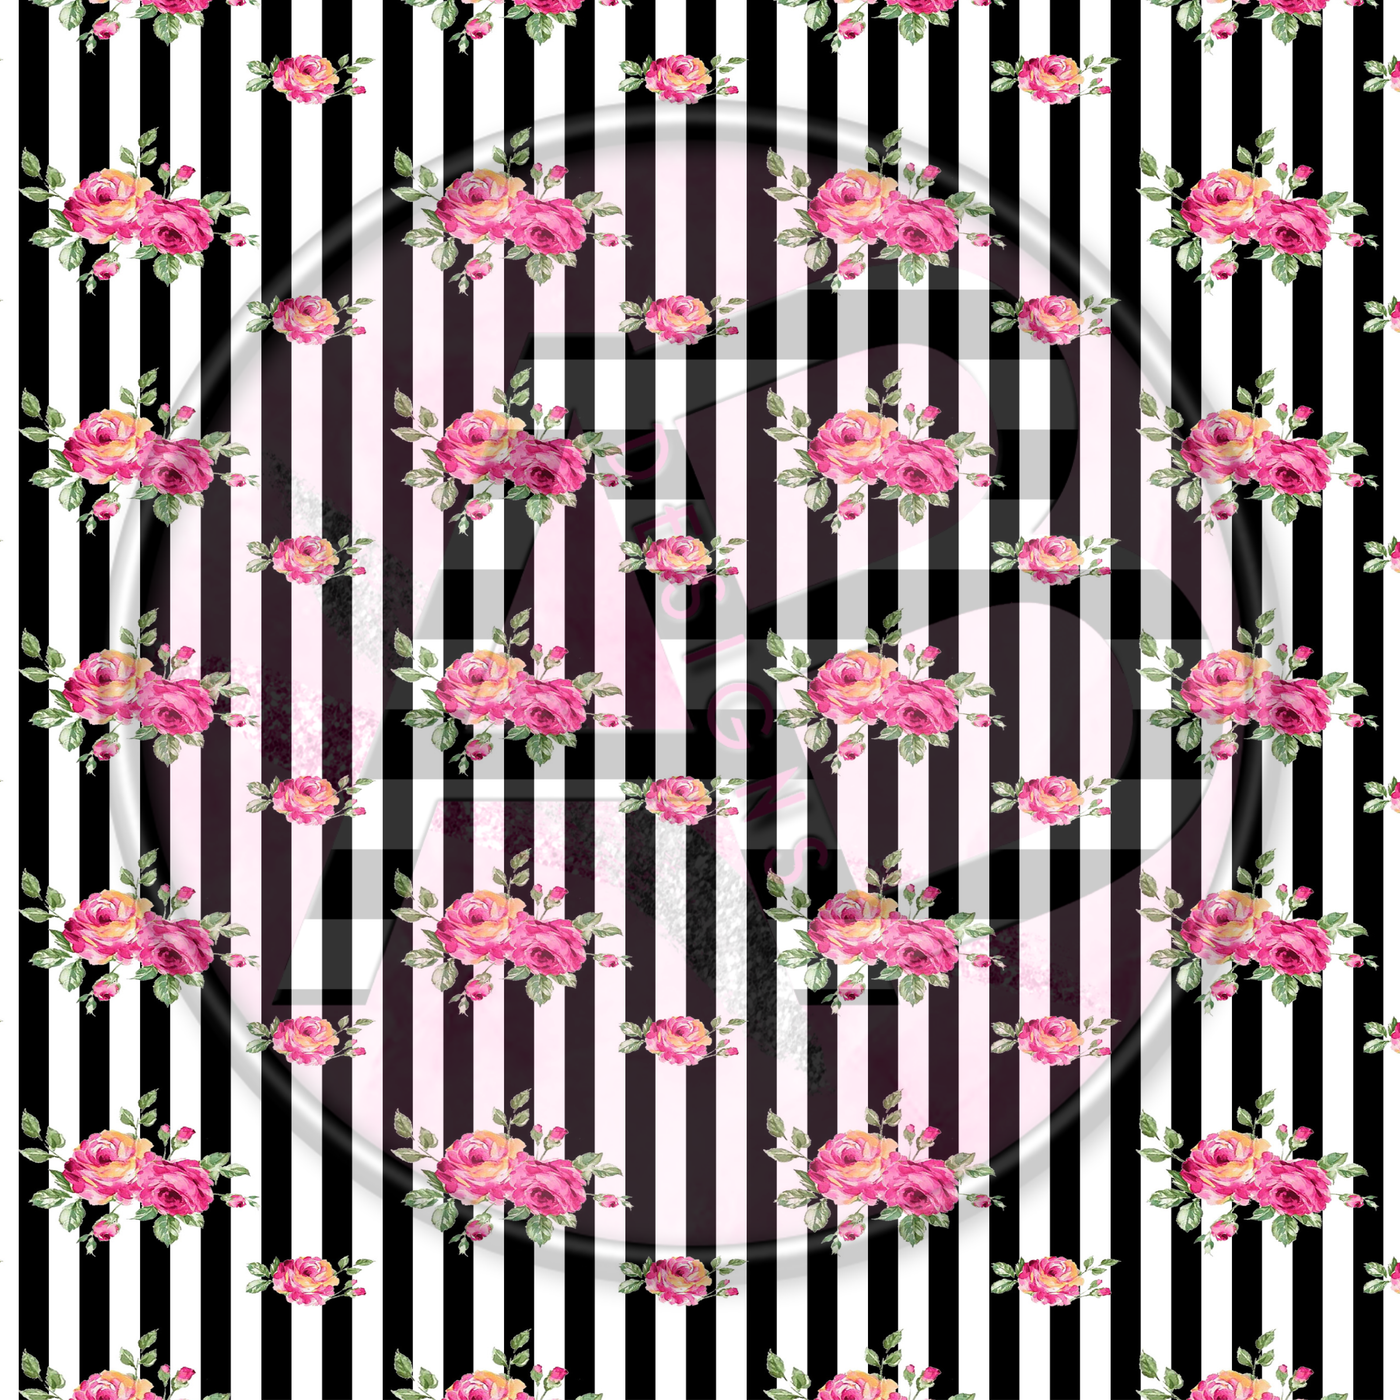 Adhesive Patterned Vinyl - Pink & Black Floral 11